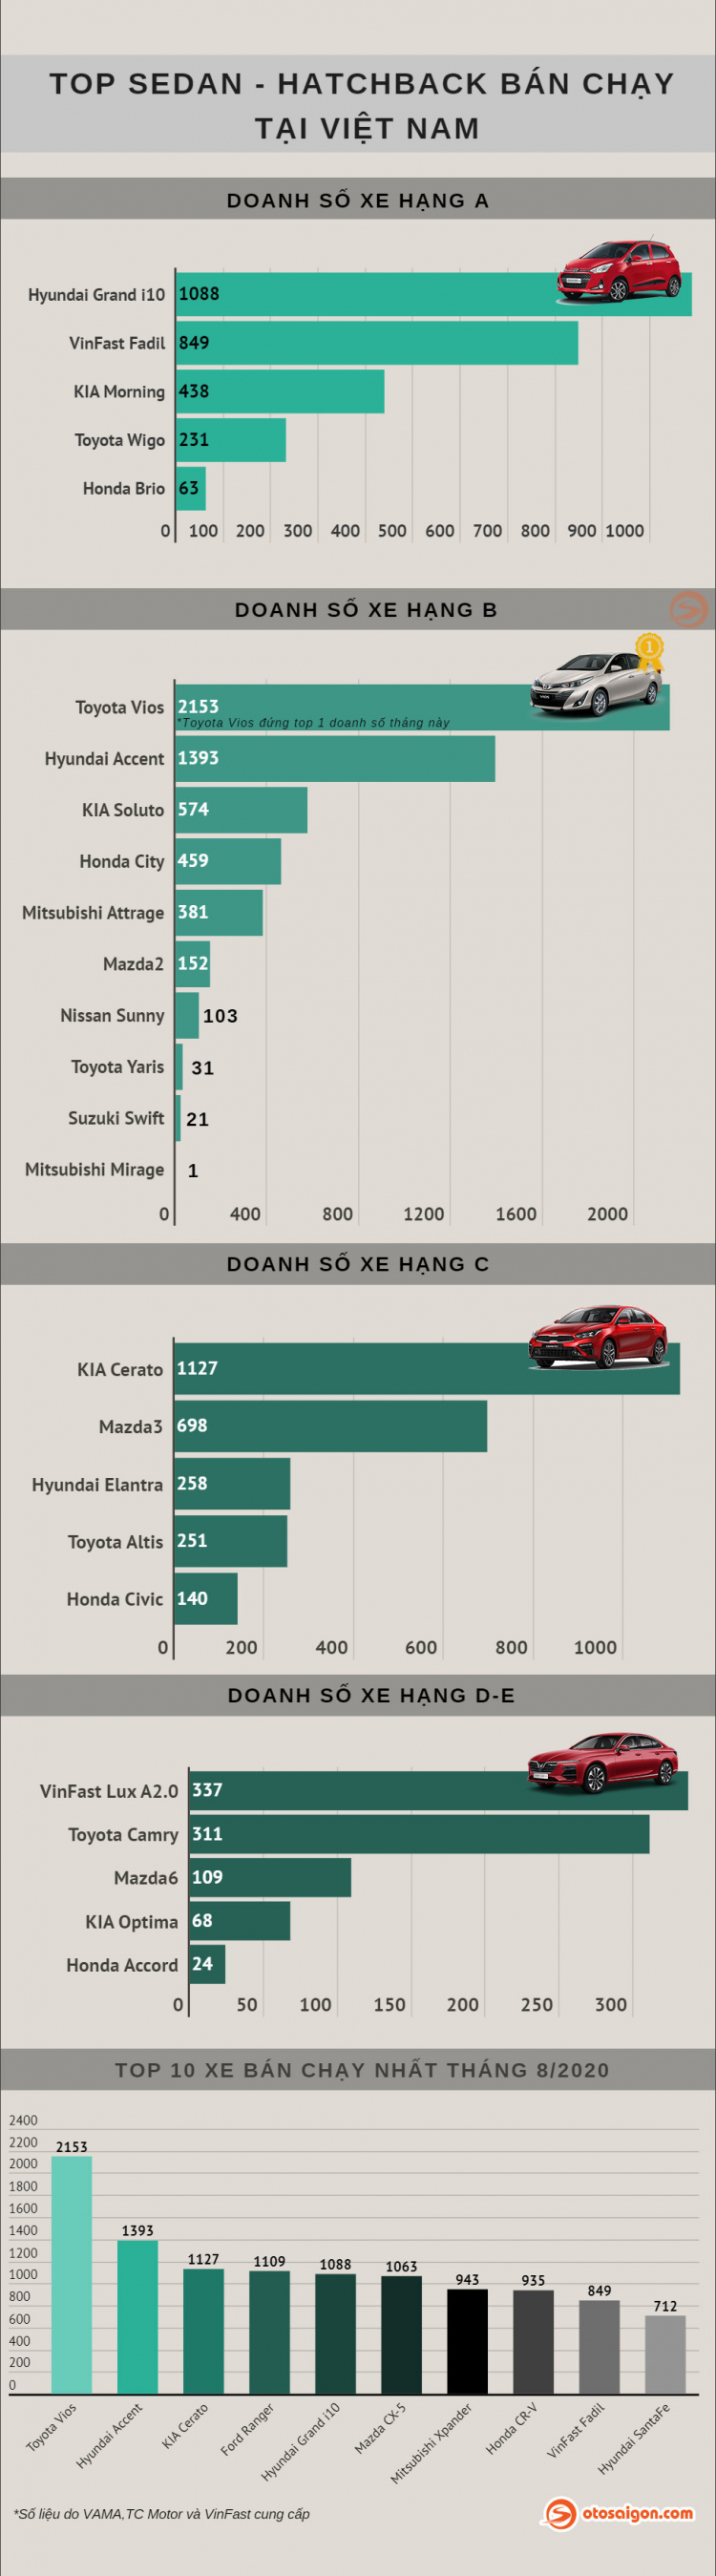 [Infographic] Top Sedan/Hatchback bán chạy tại Việt Nam tháng 8/2020: Vios thống trị, Lux A2.0 vượt Camry